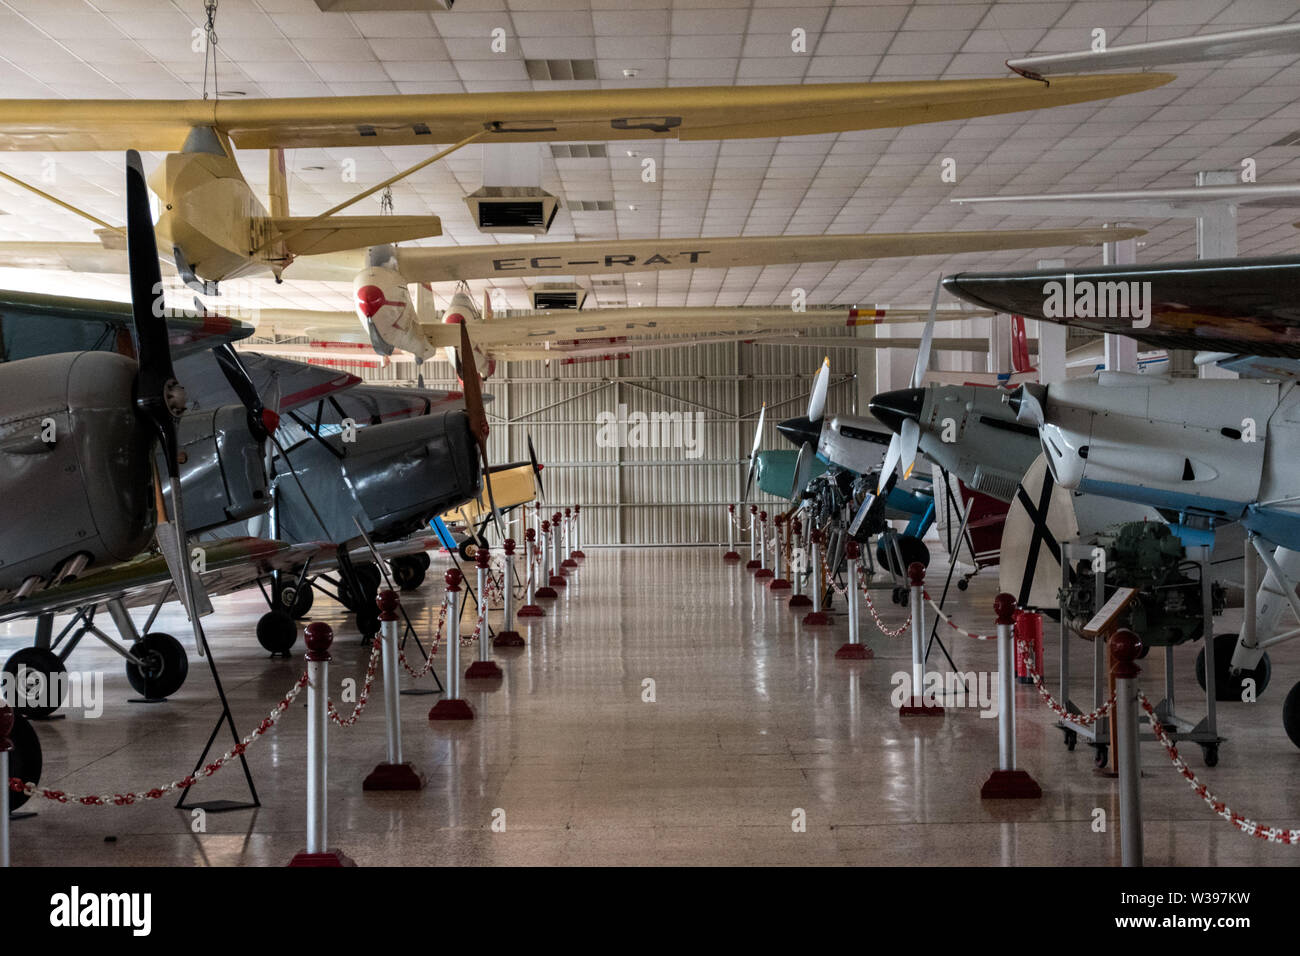 Maquette d'une hélice dans le Museo del Aire est un musée de l'aviation situé dans la périphérie de Madrid à l'aéroport de Cuatro Ventos Banque D'Images